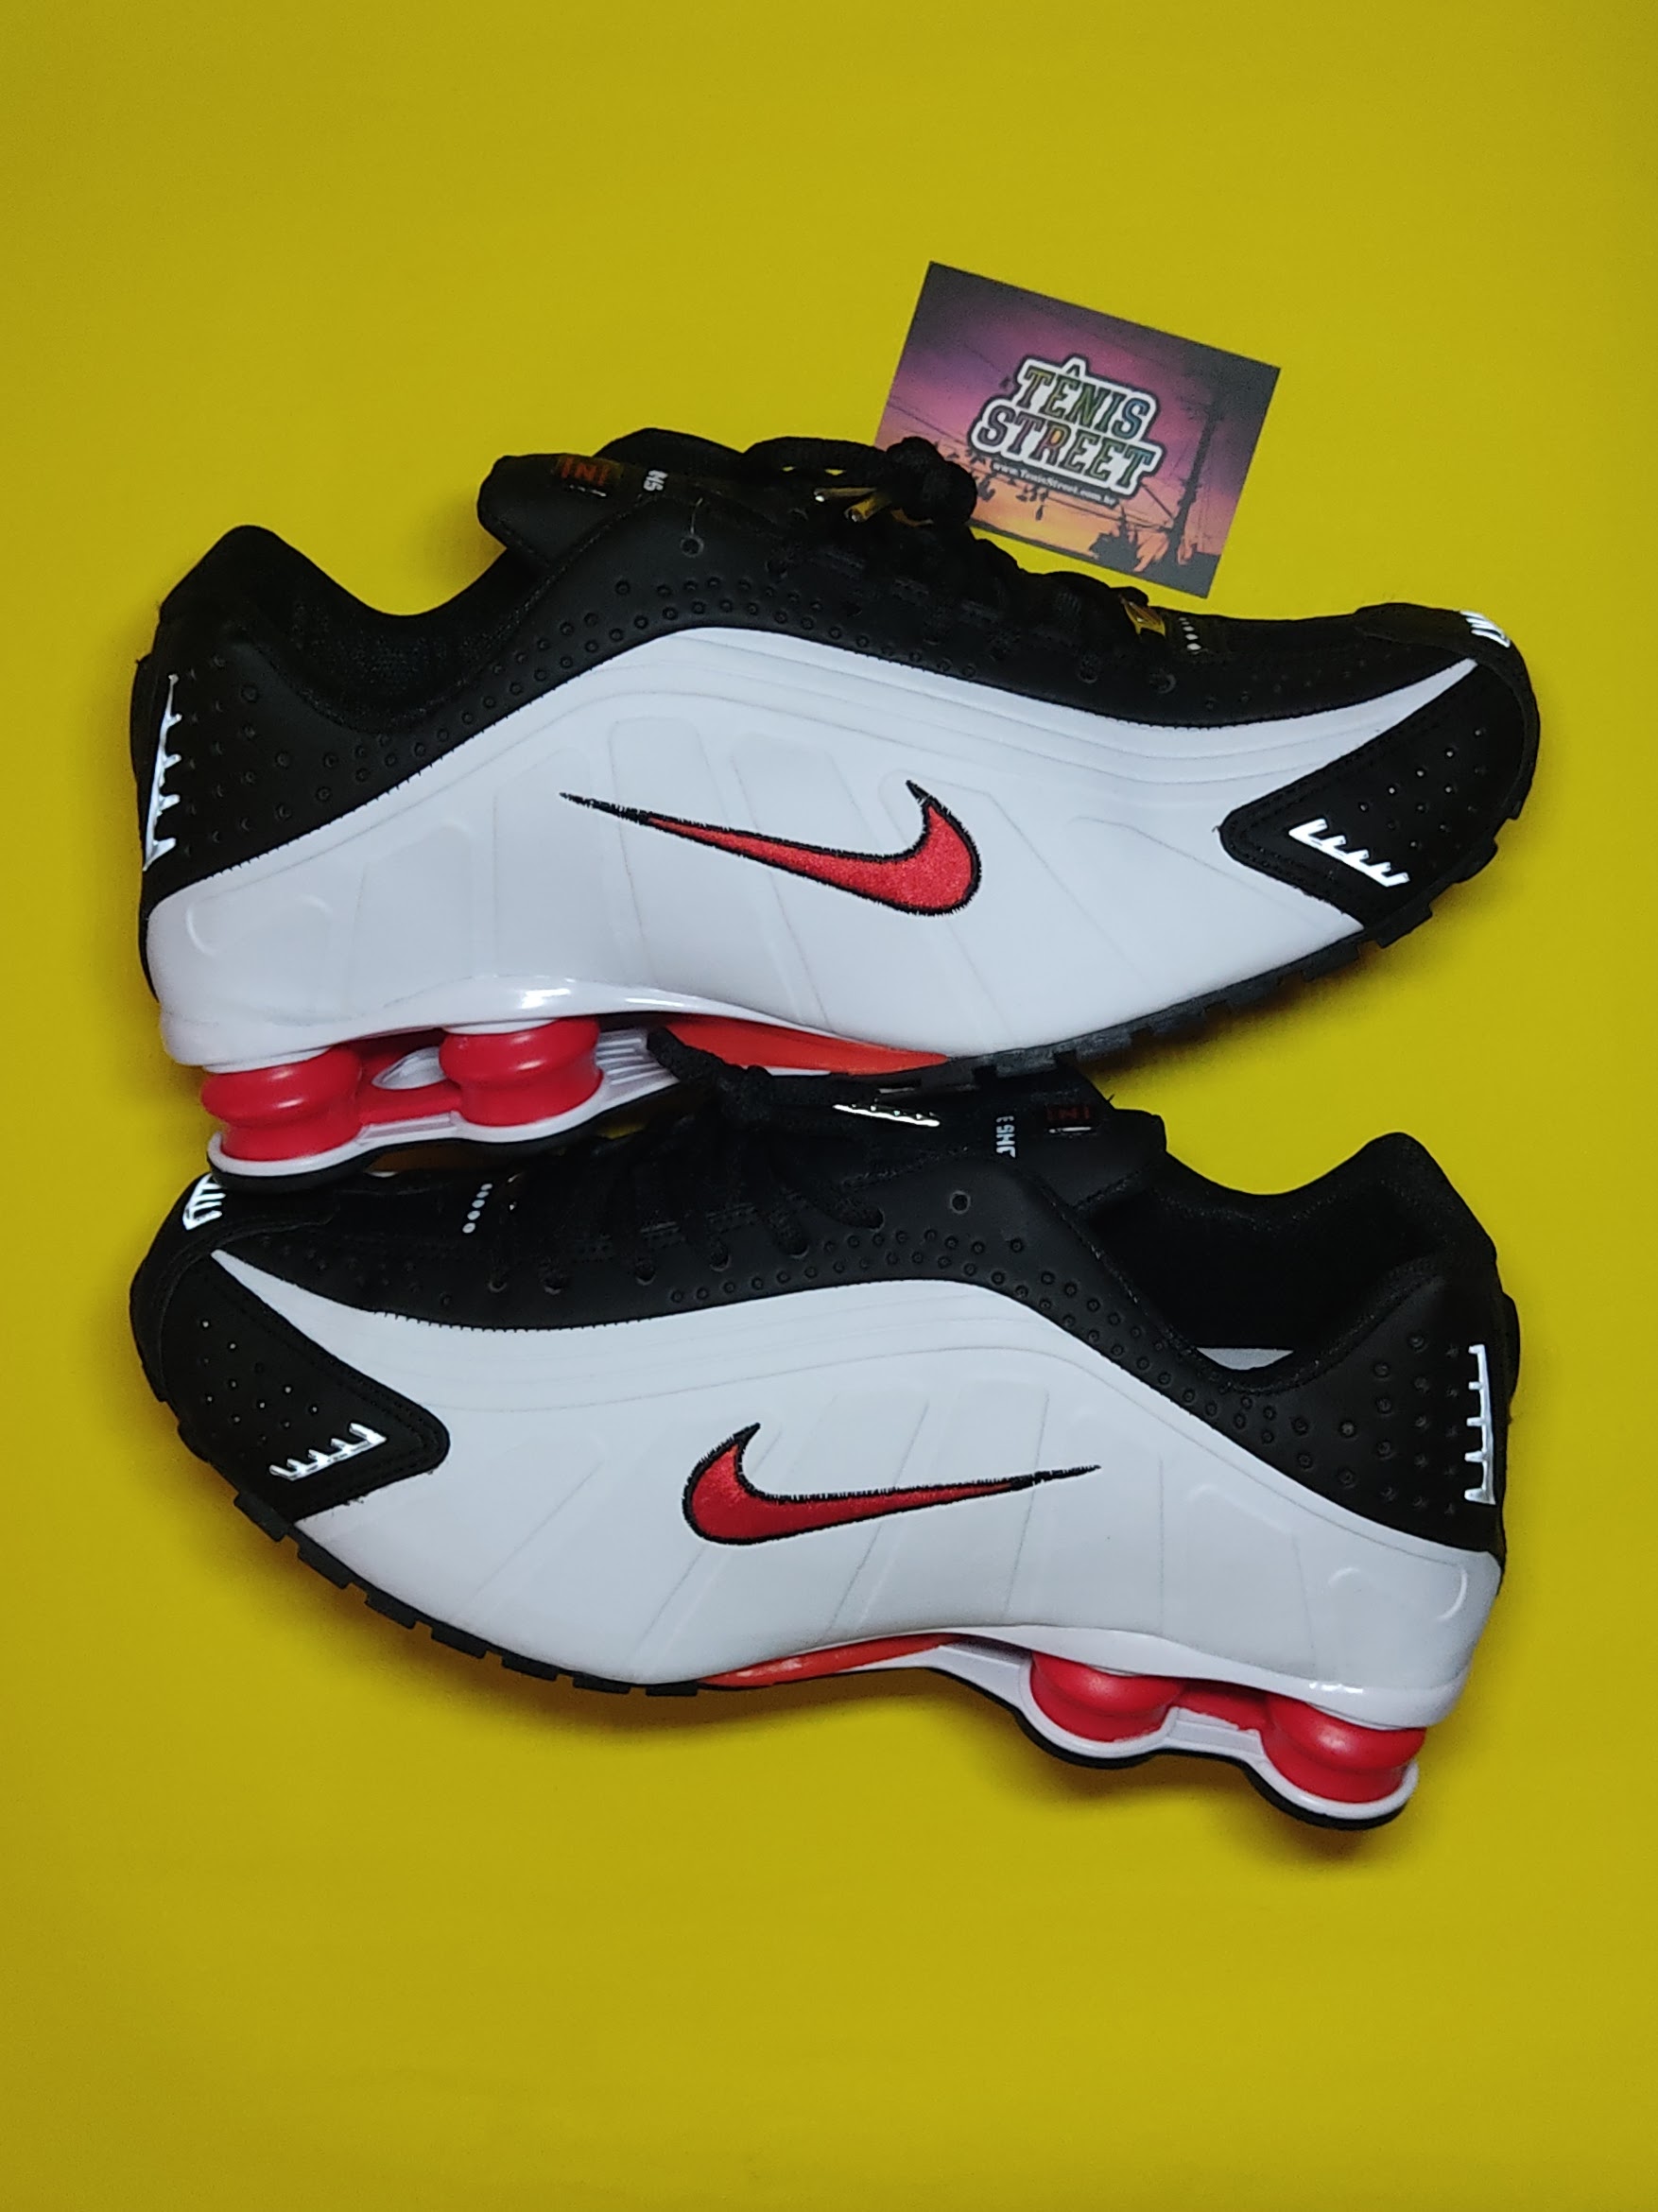 Tênis Nike Shox R4 White Black Red - Branco / Preto / Vermelho - @tenis .street